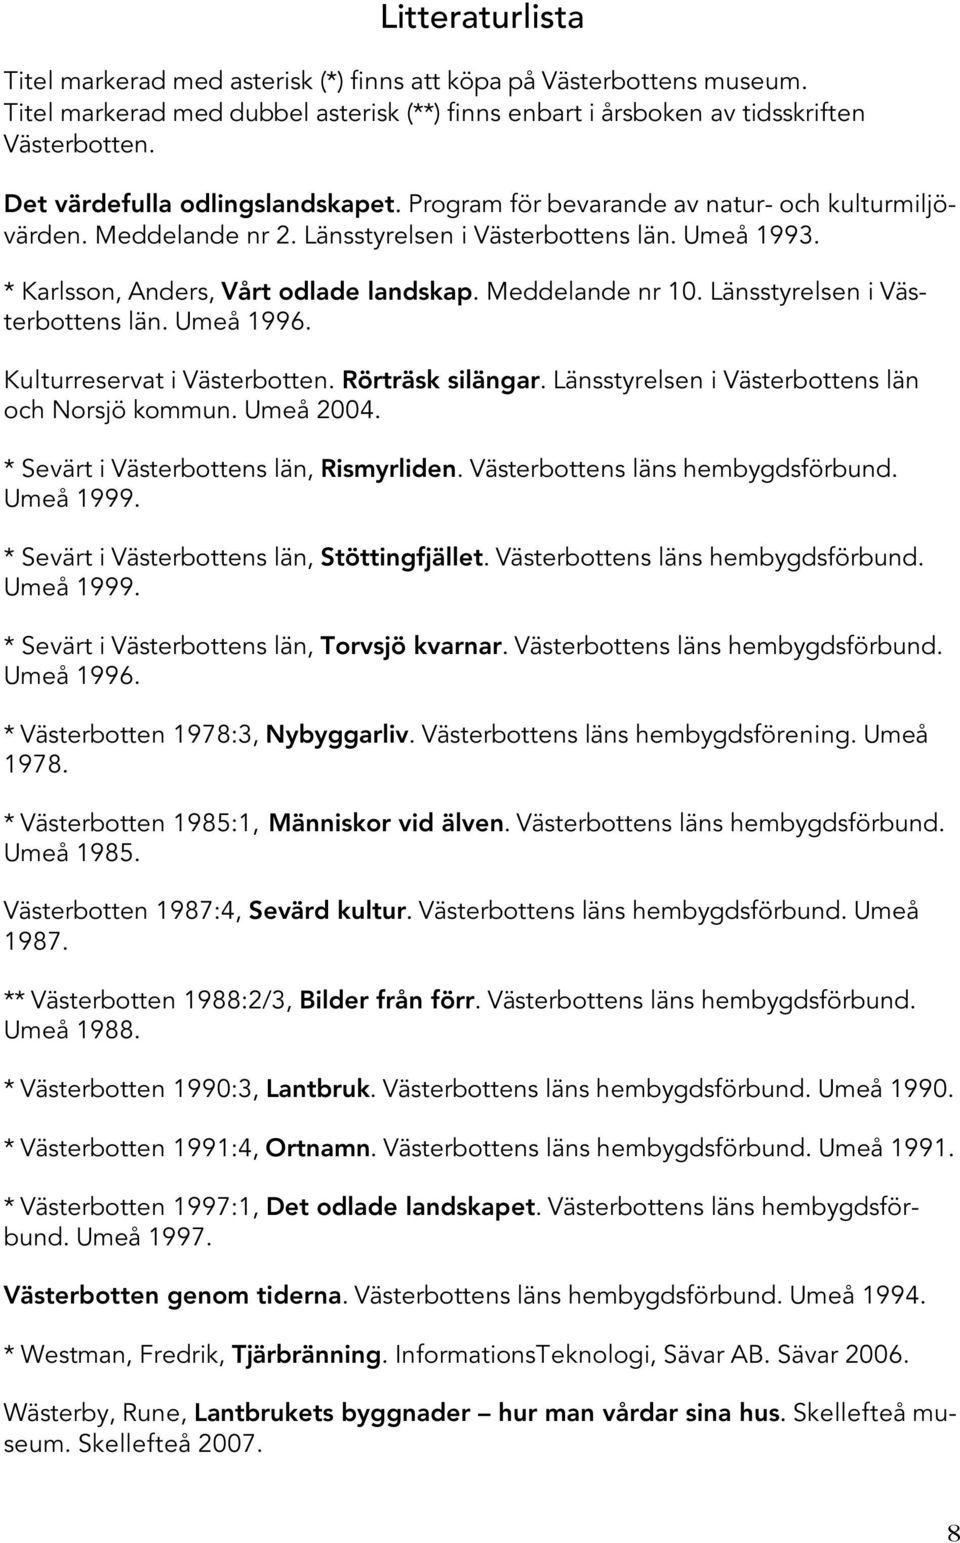 Meddelande nr 10. Länsstyrelsen i Västerbottens län. Umeå 1996. Kulturreservat i Västerbotten. Rörträsk silängar. Länsstyrelsen i Västerbottens län och Norsjö kommun. Umeå 2004.